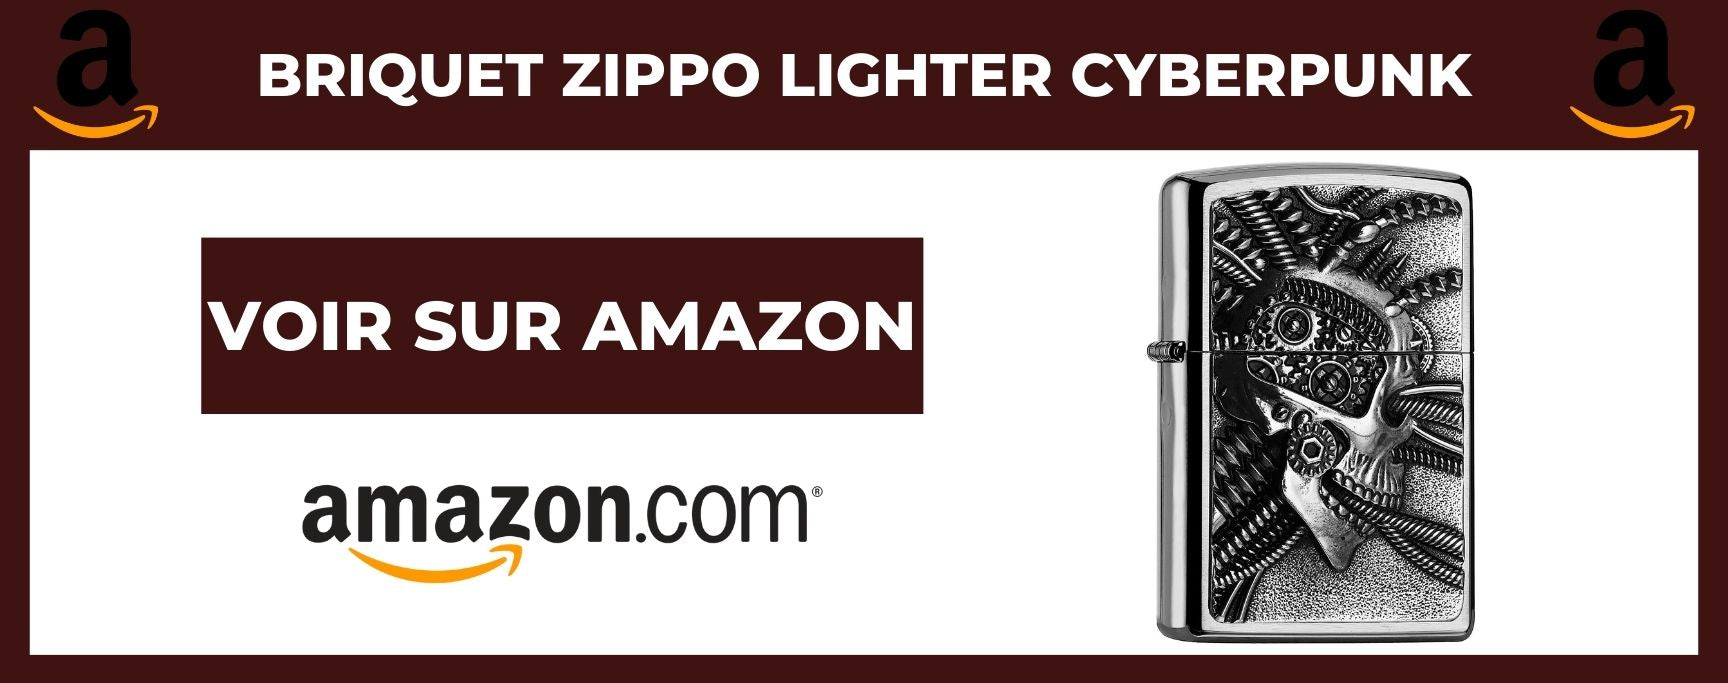 Briquet Zippo Lighter Cyberpunk